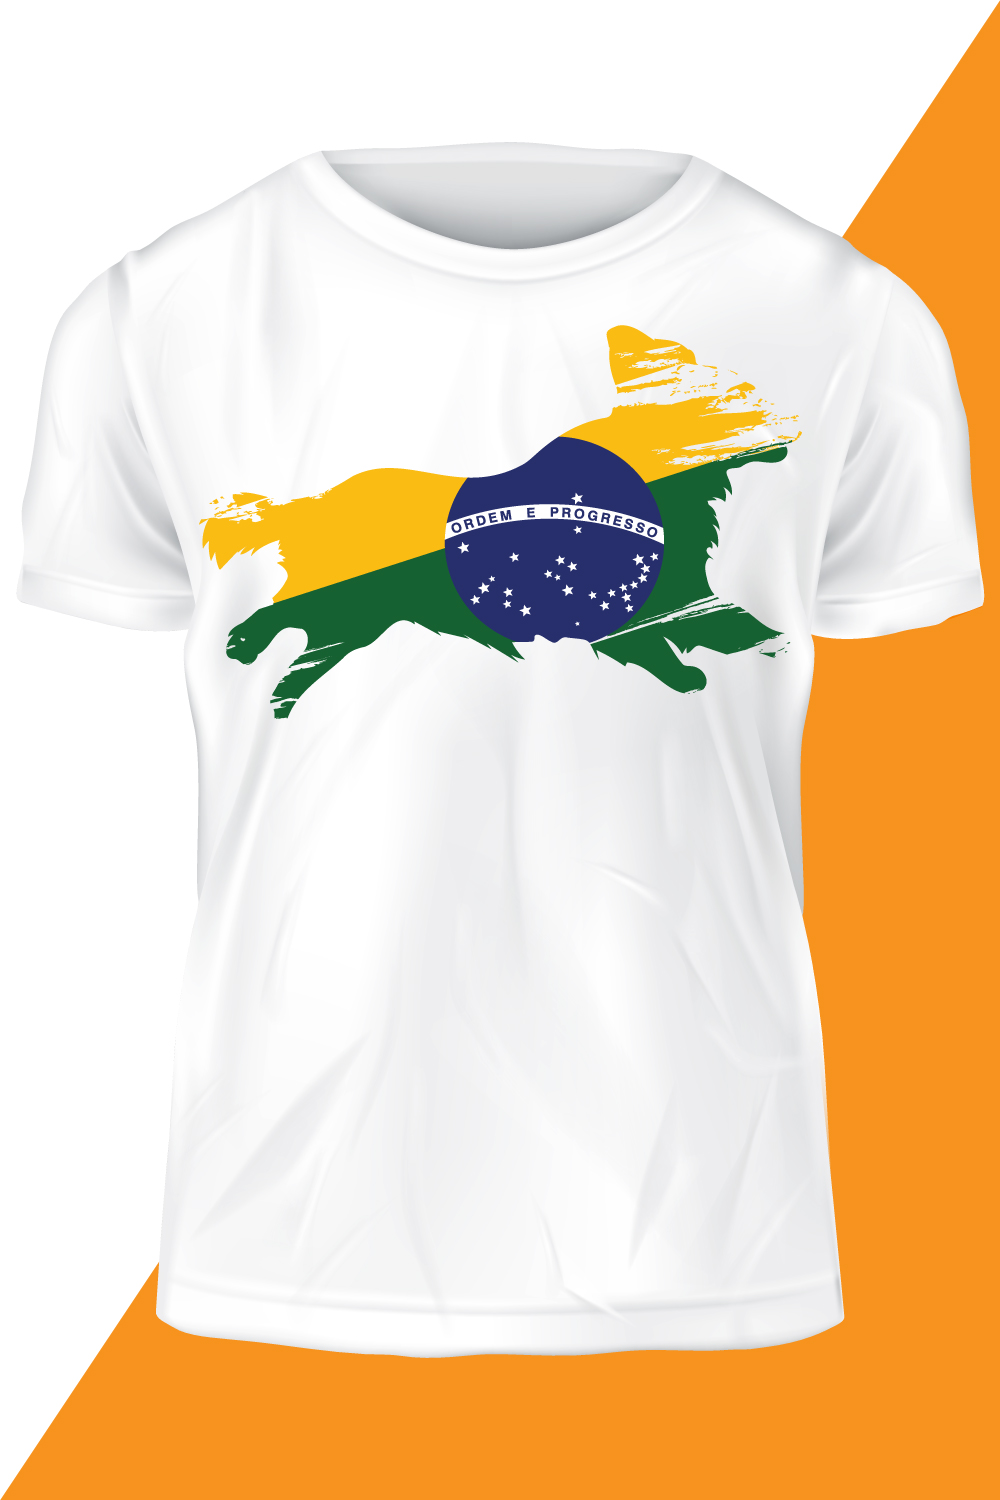 Brazil Flag Style T-shirt Vector Template pinterest image.